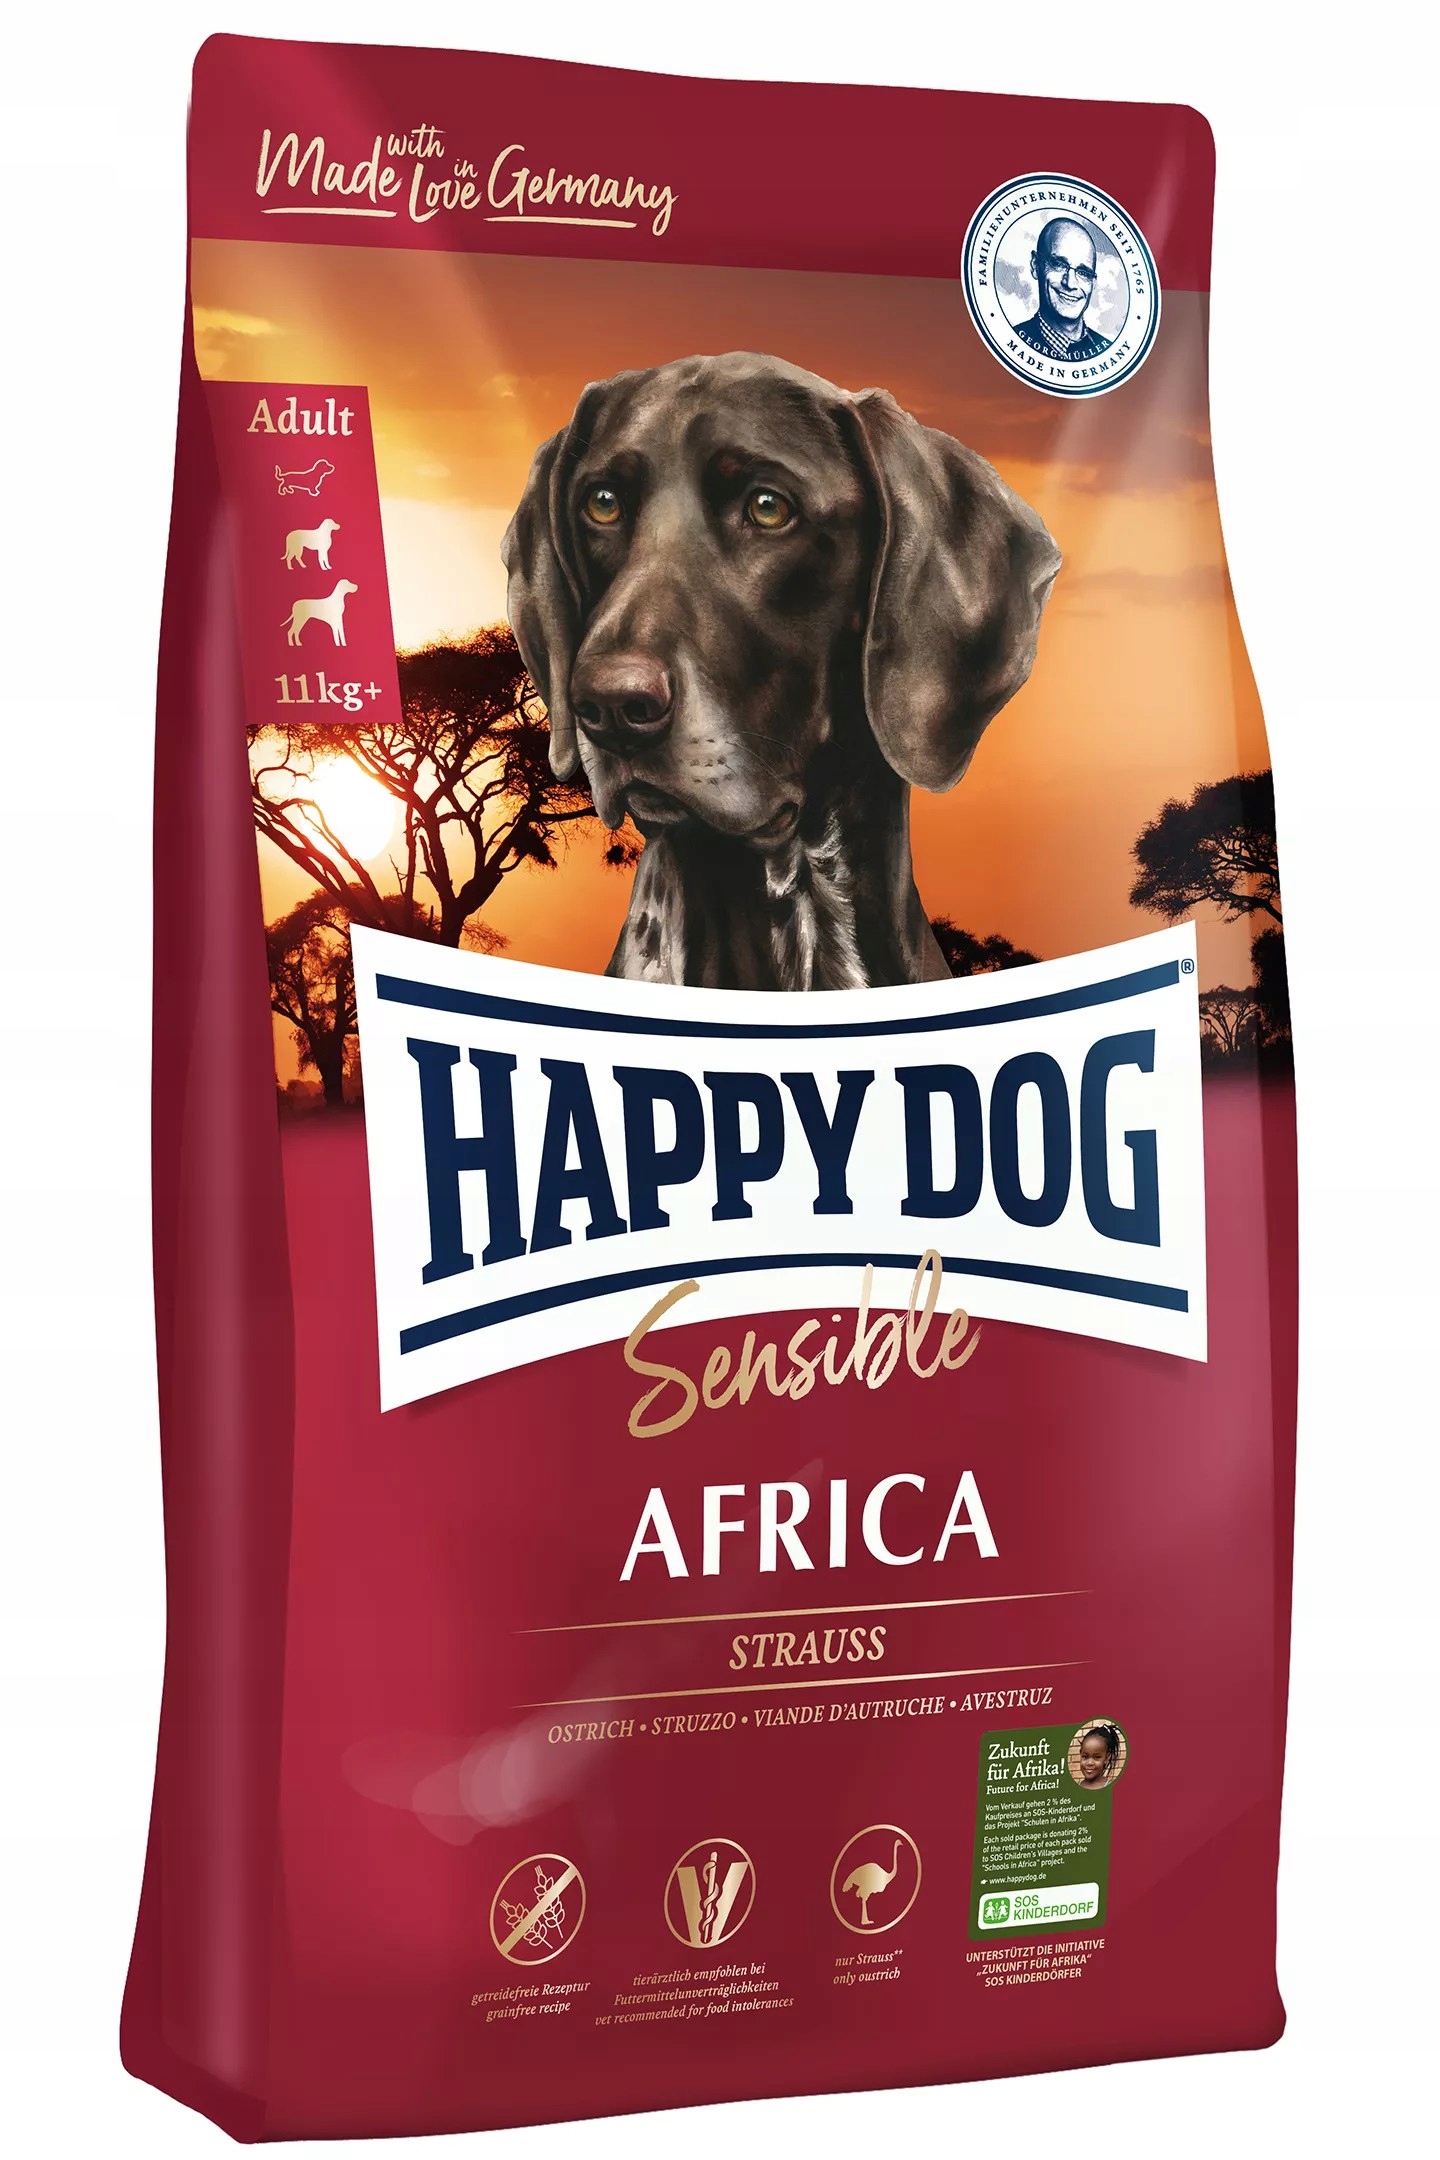 HAPPY DOG Sensible Africa 4kg